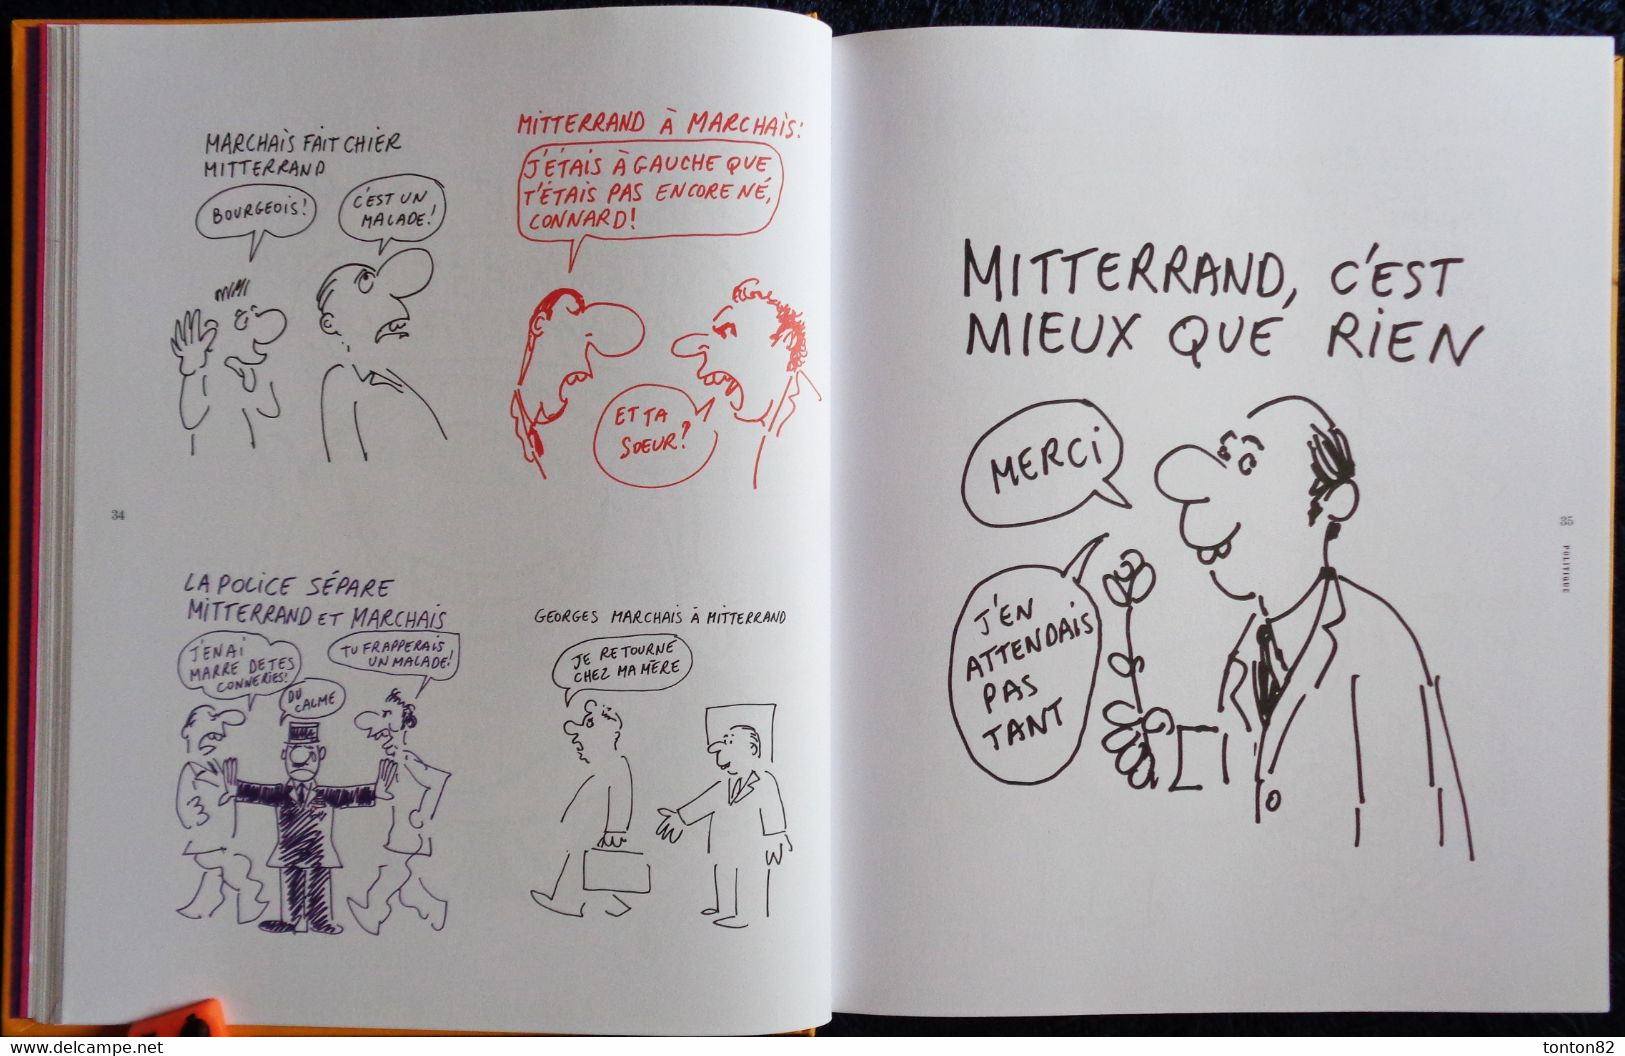 WOLINSKI  - Mes Années 1970 -  Les Échappés . Charlie Hebdo - ( 2015  )  - Cartonné 230 pages .